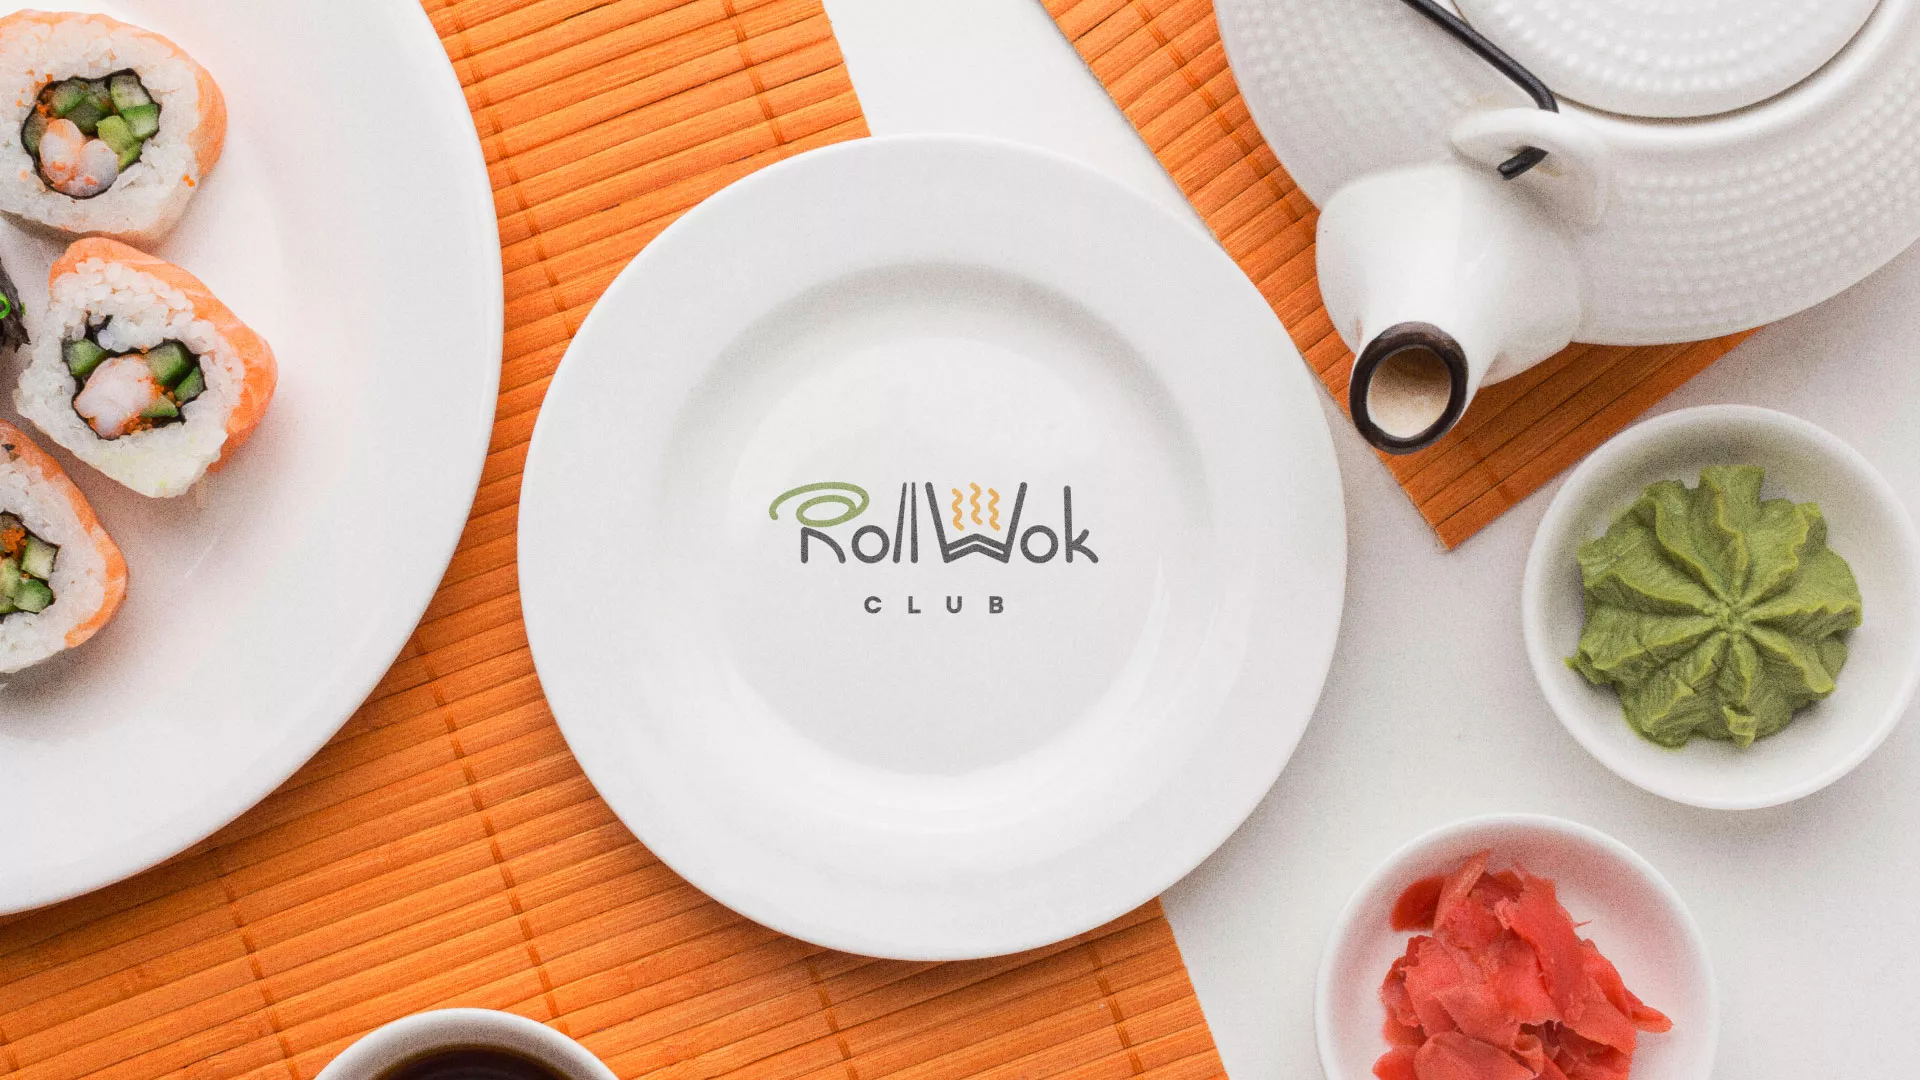 Разработка логотипа и фирменного стиля суши-бара «Roll Wok Club» в Каменногорске